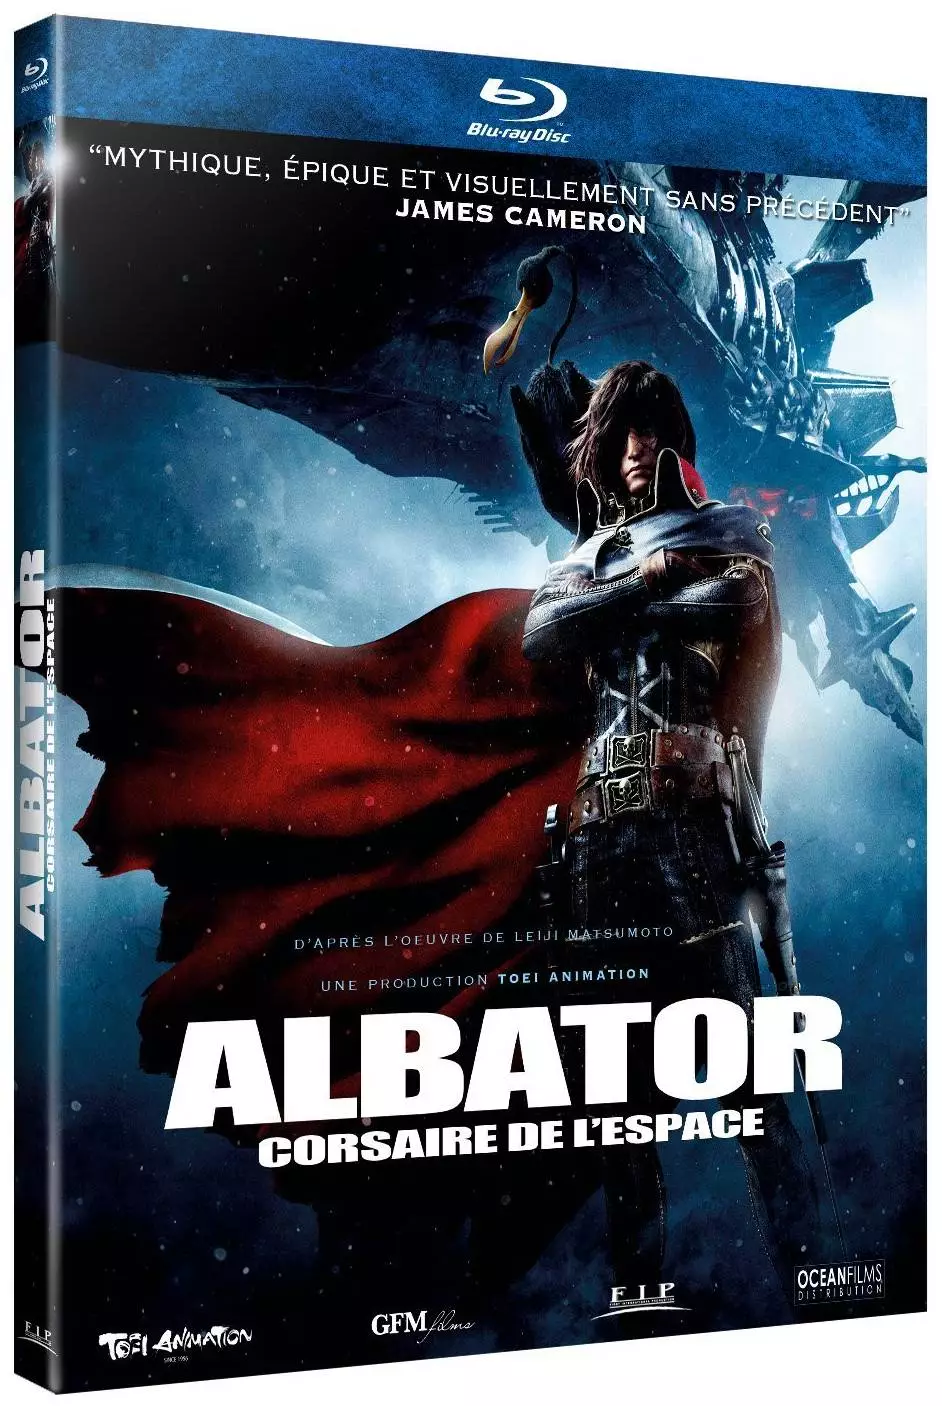 Albator, corsaire de l'espace - Blu-Ray